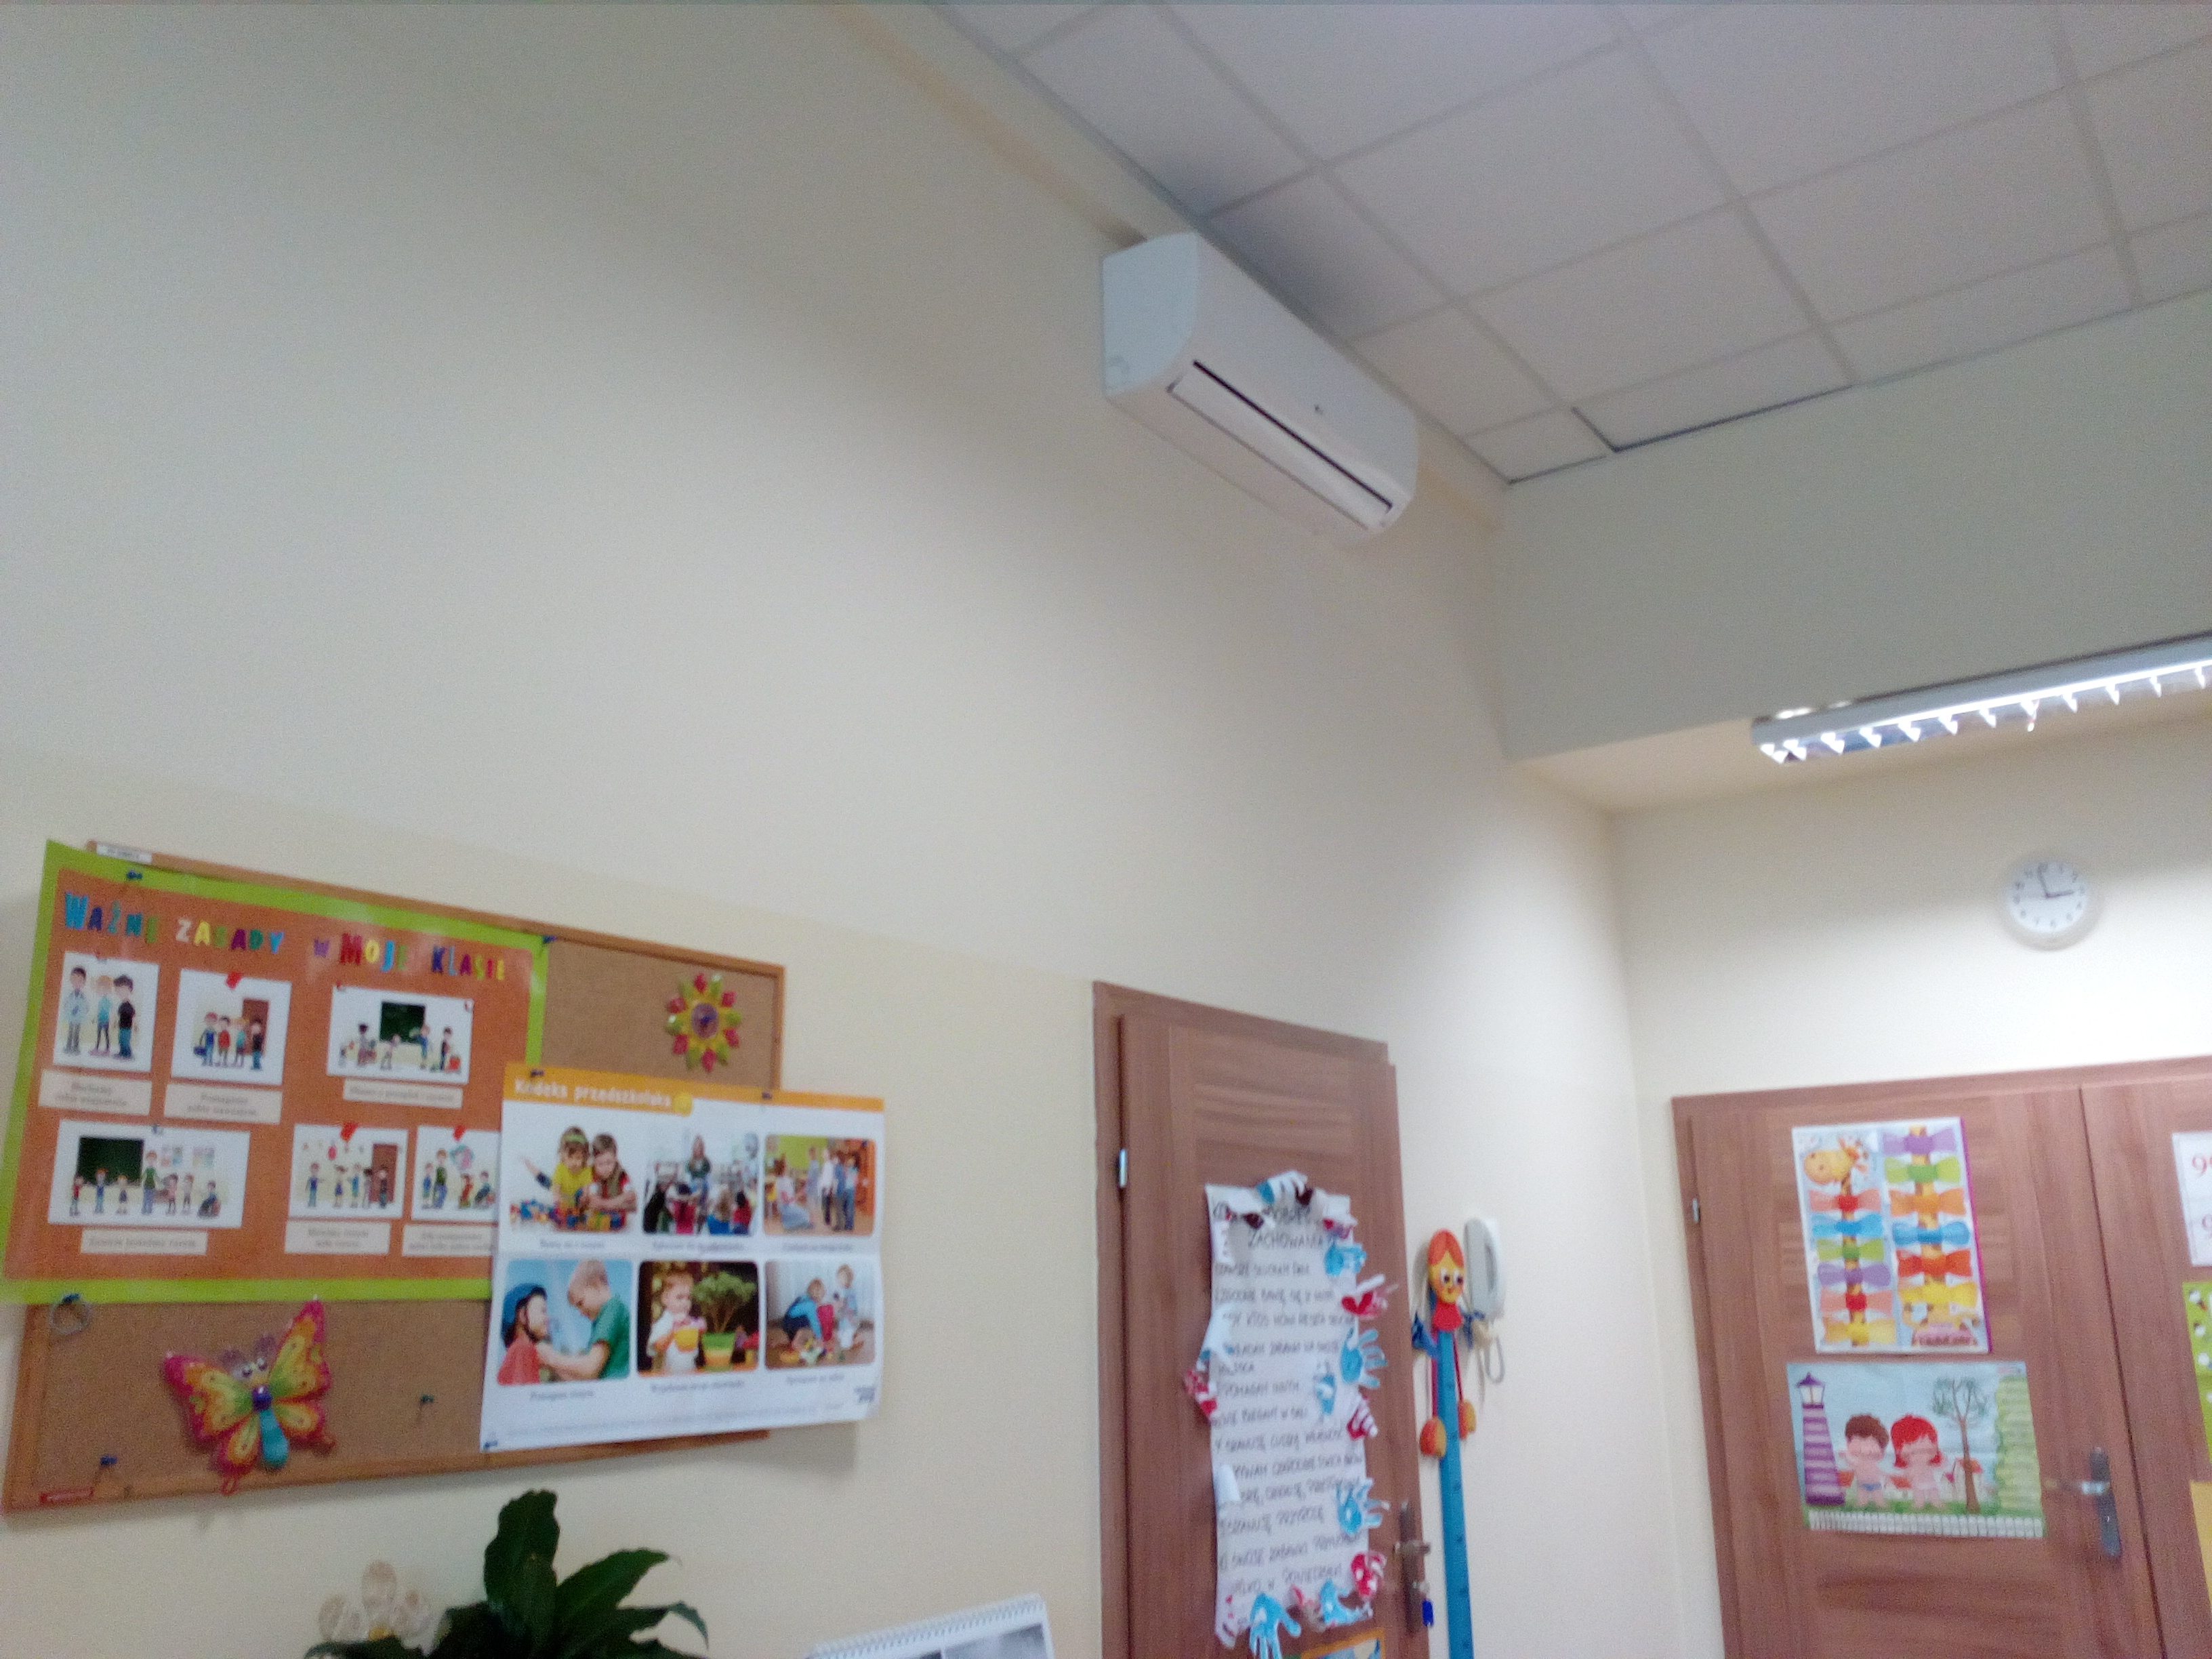 zdjęcie przedstawia ścianę przedszkola z zamontowanym klimatyzatorem